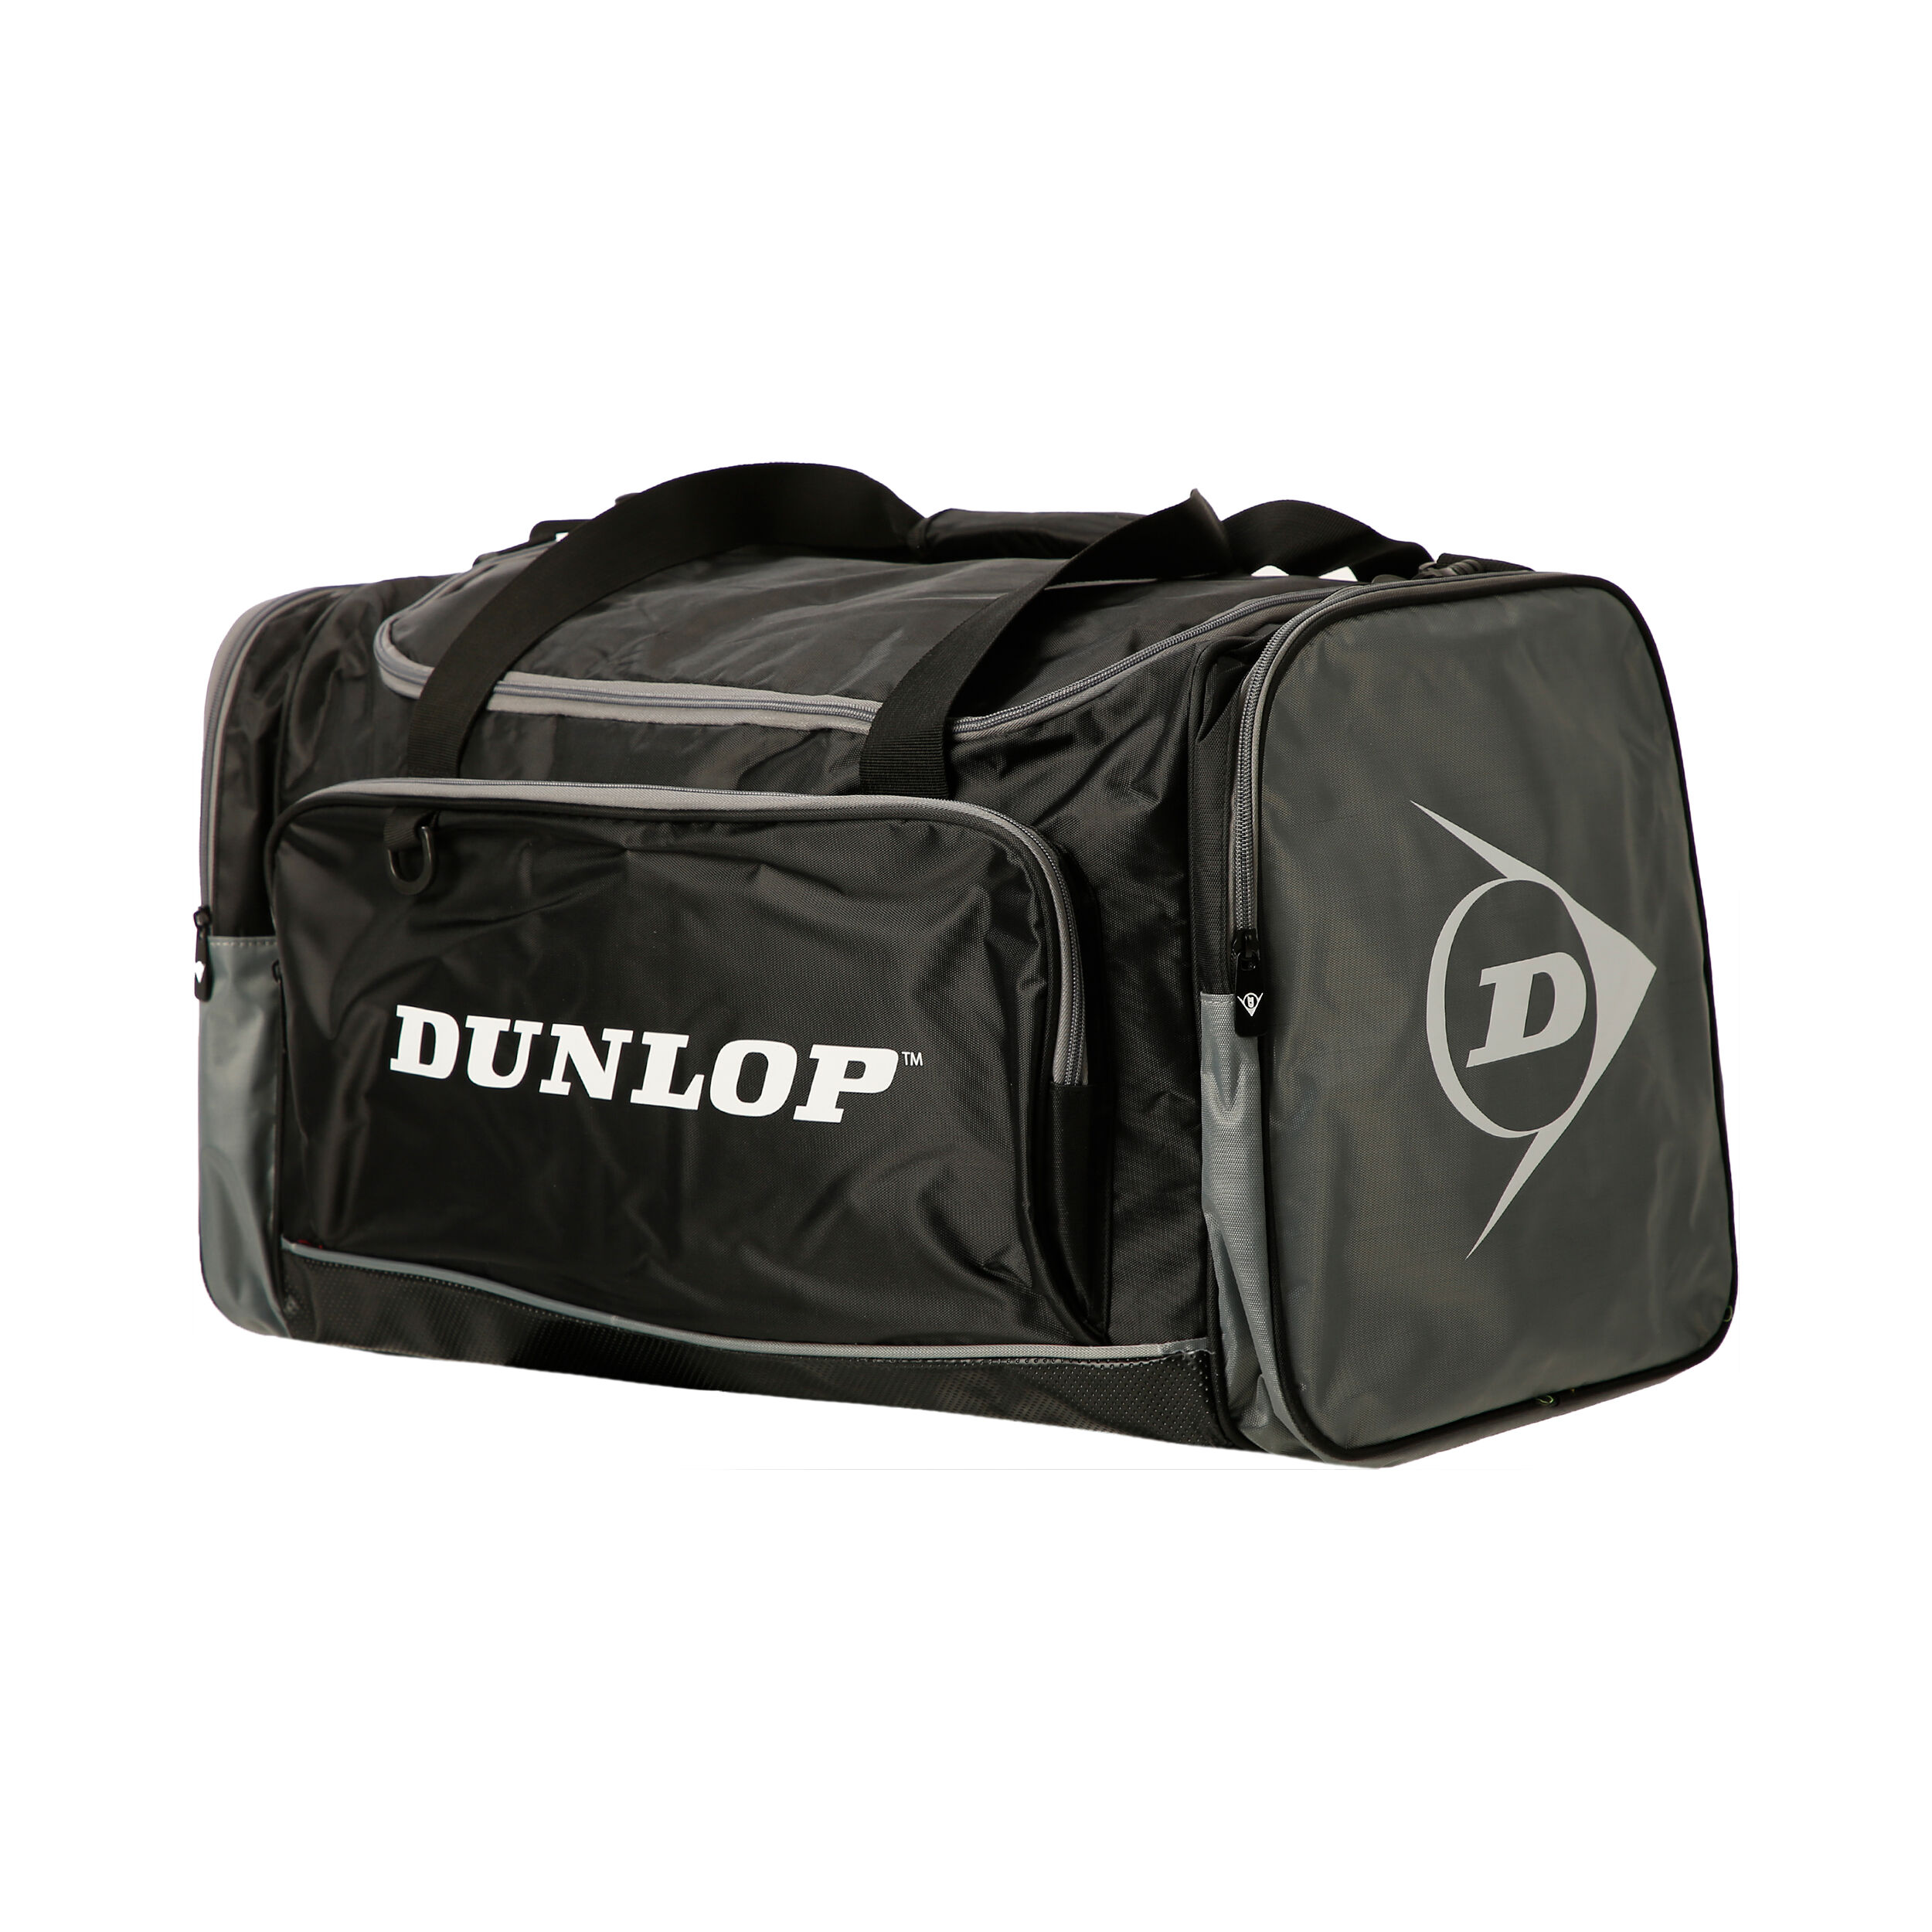 Dunlop D Tac Club Medium Bag Black/Silver Sporttasche Schwarz Silber Neu 